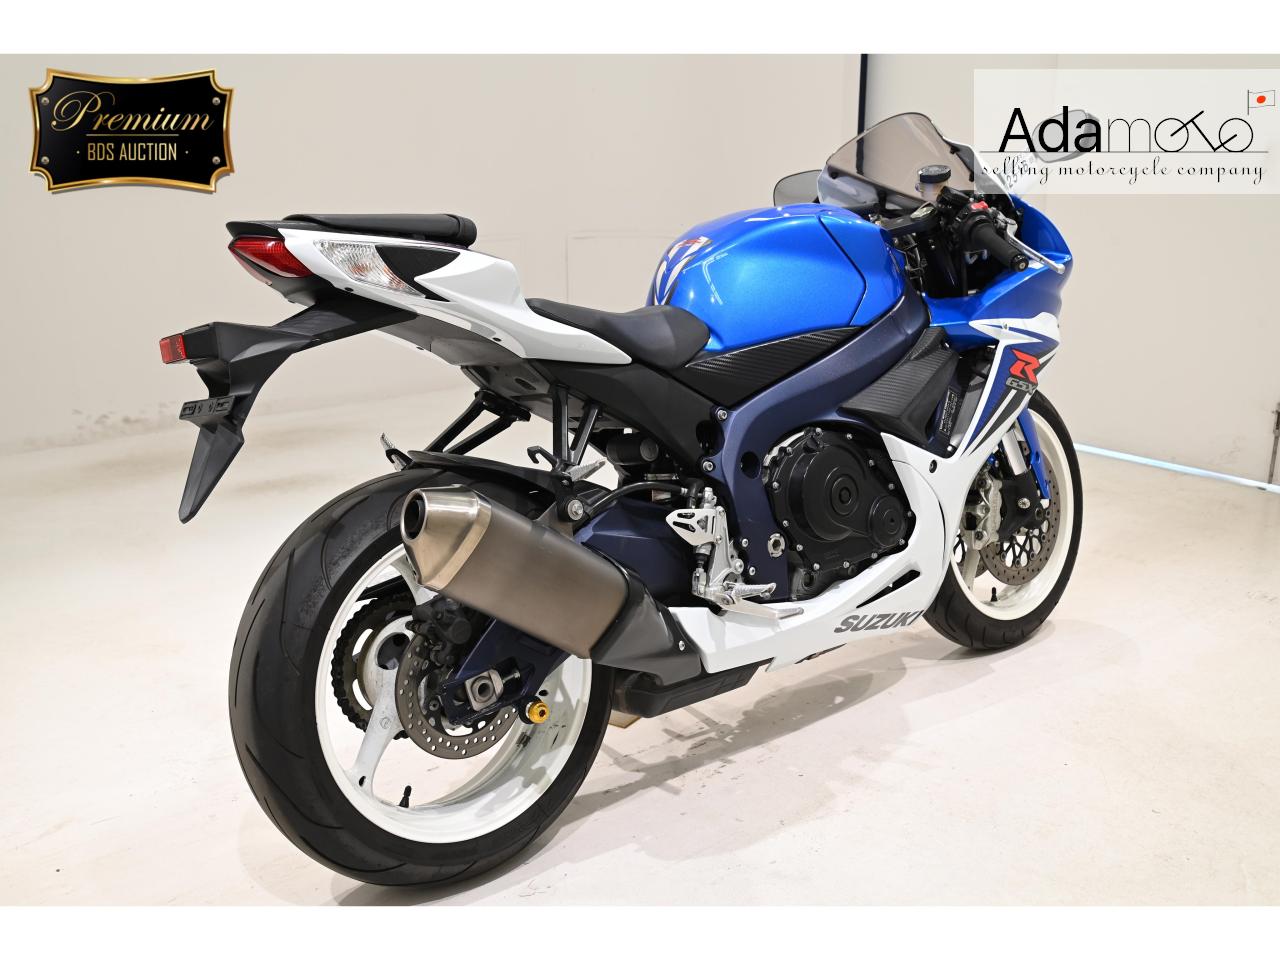 Suzuki GSX R600 - Adamoto - Motorcycles from Japan